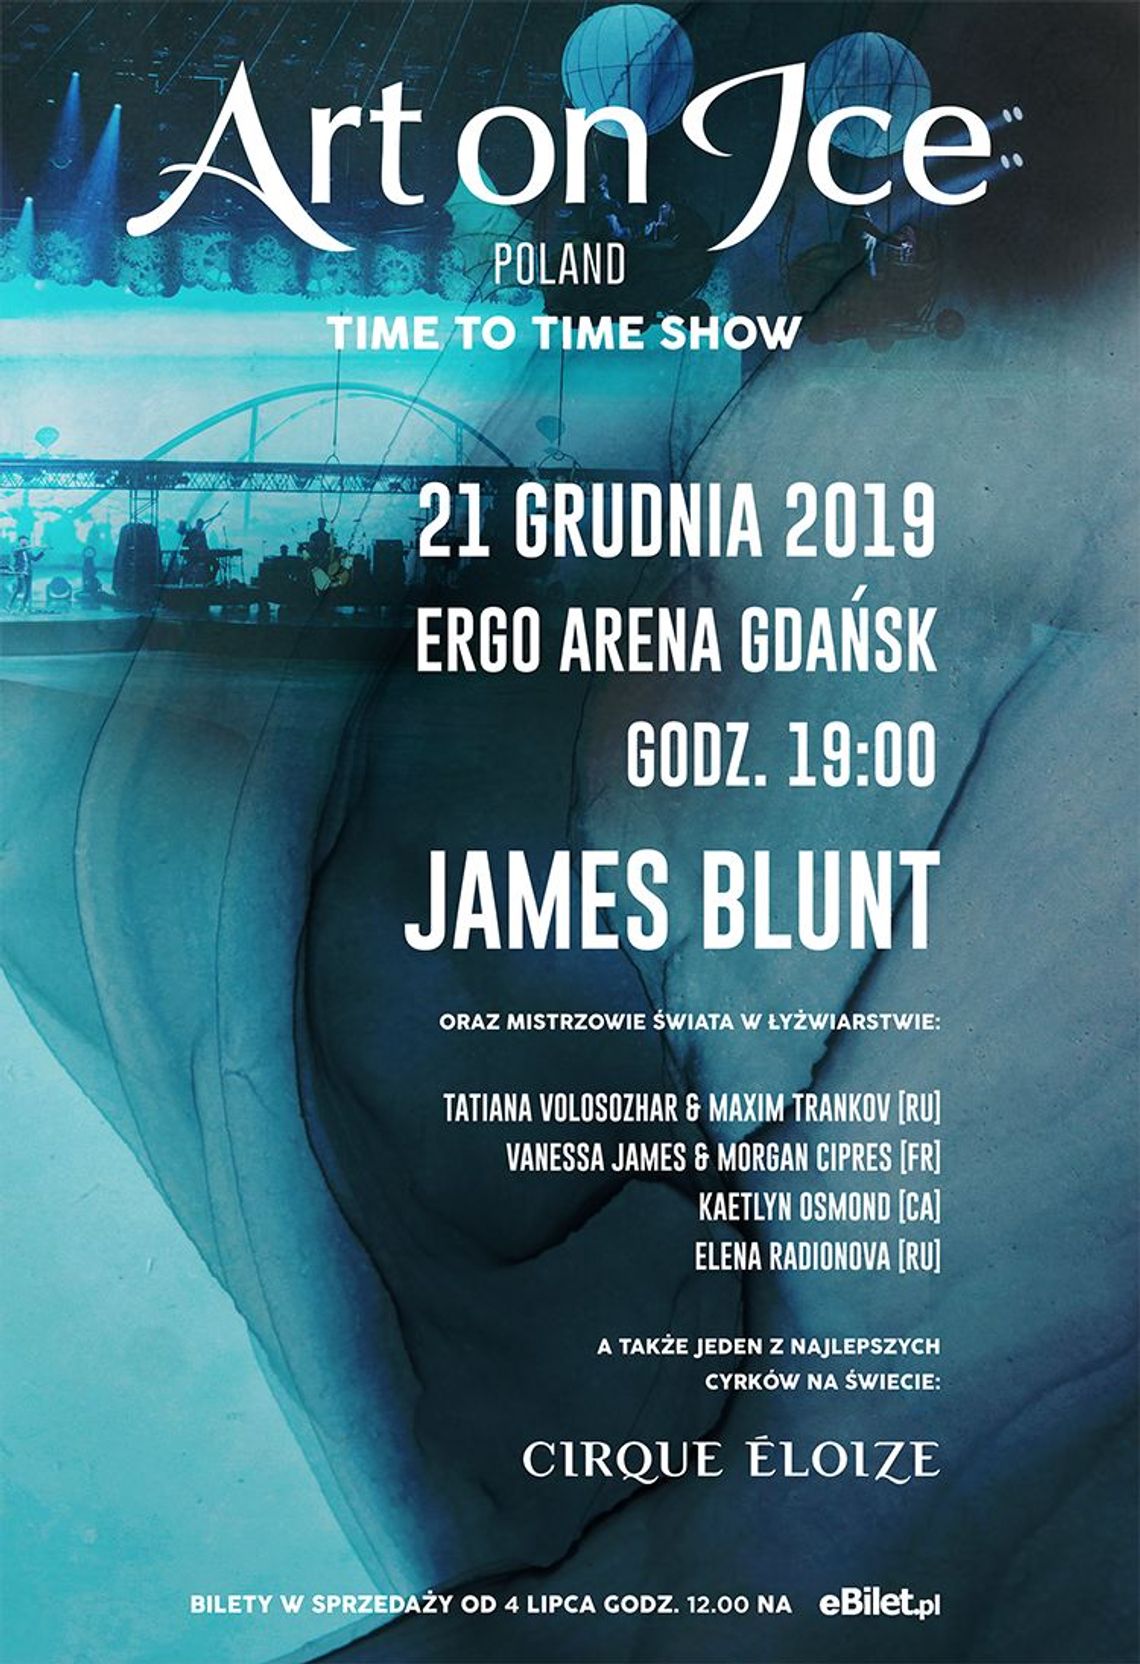 James Blunt w Ergo Arenie wraz z legendarnym ART ON ICE!